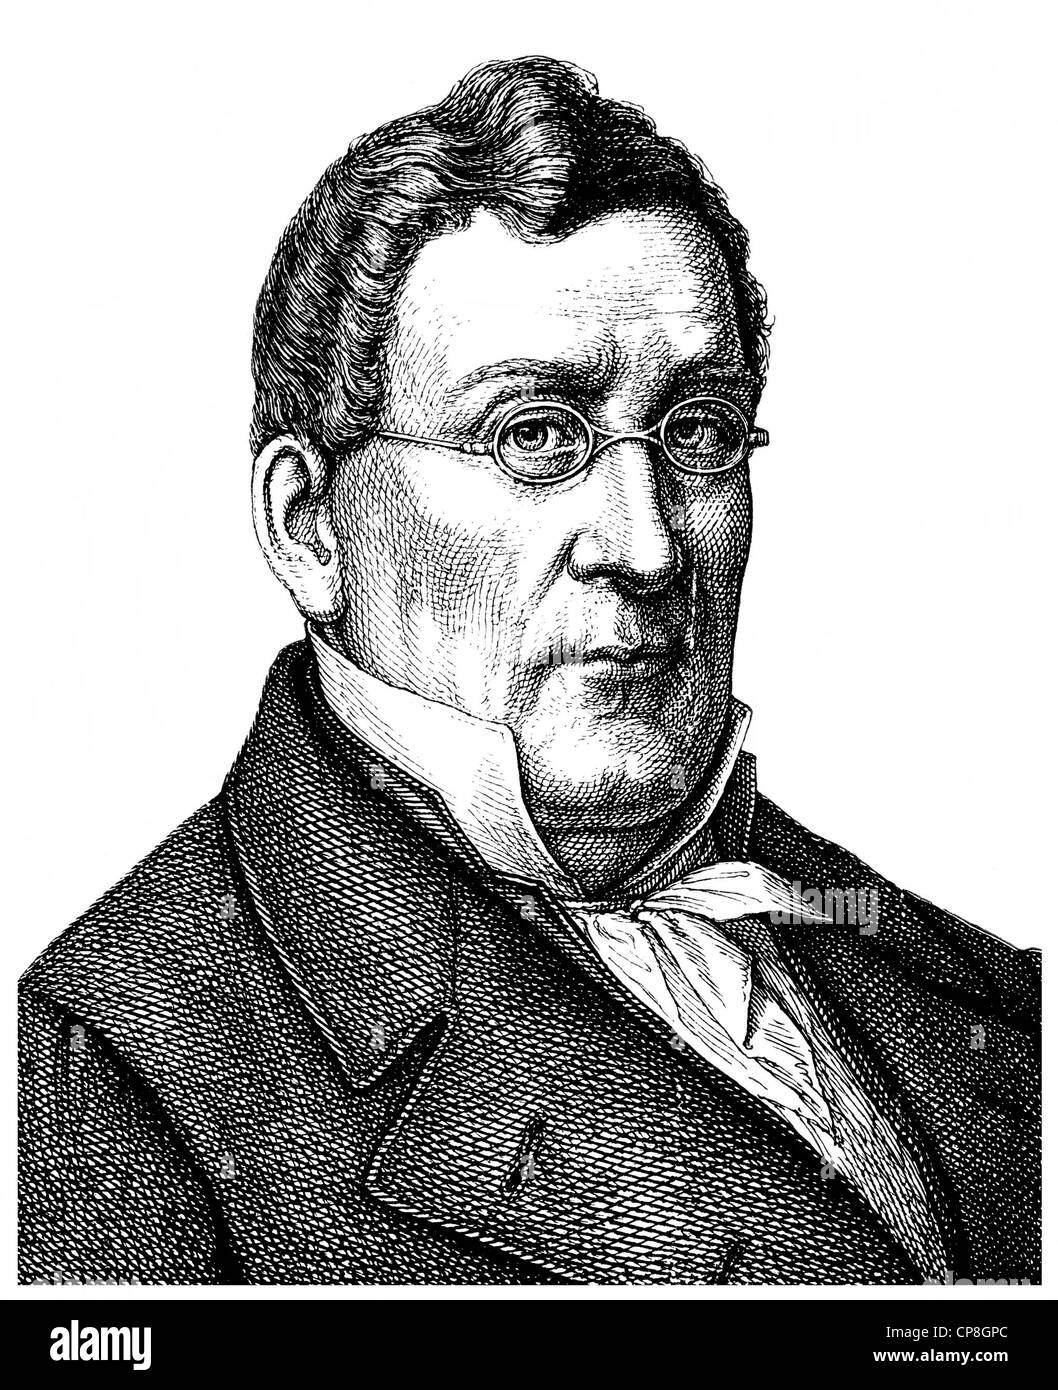 Louis ou Ludwig Spohr, 1784 - 1859, un compositeur allemand, chef d'orchestre, violoniste et pédagogue, Historische Mischtechnik aus dem 19. Jah Banque D'Images